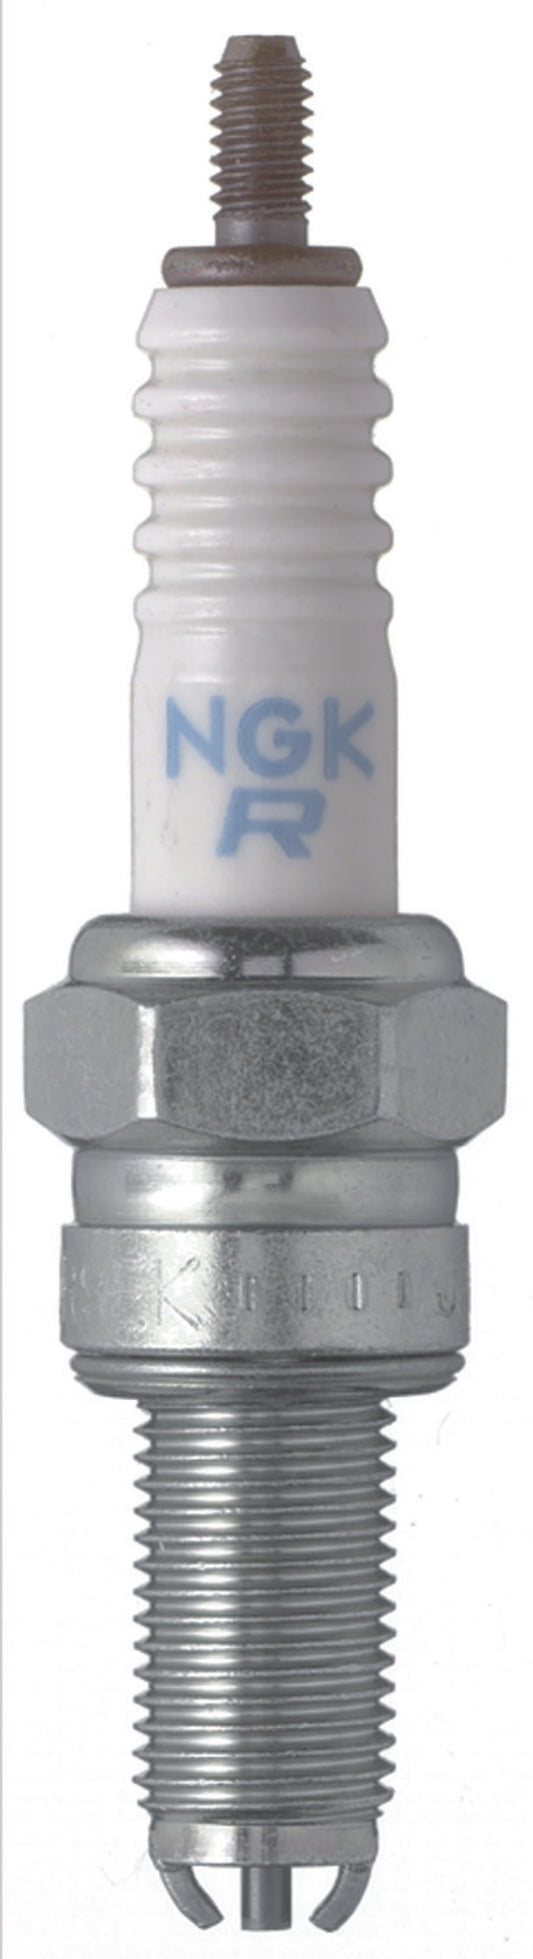 NGK Standard Spark Plug Box of 10 (CR8EK)